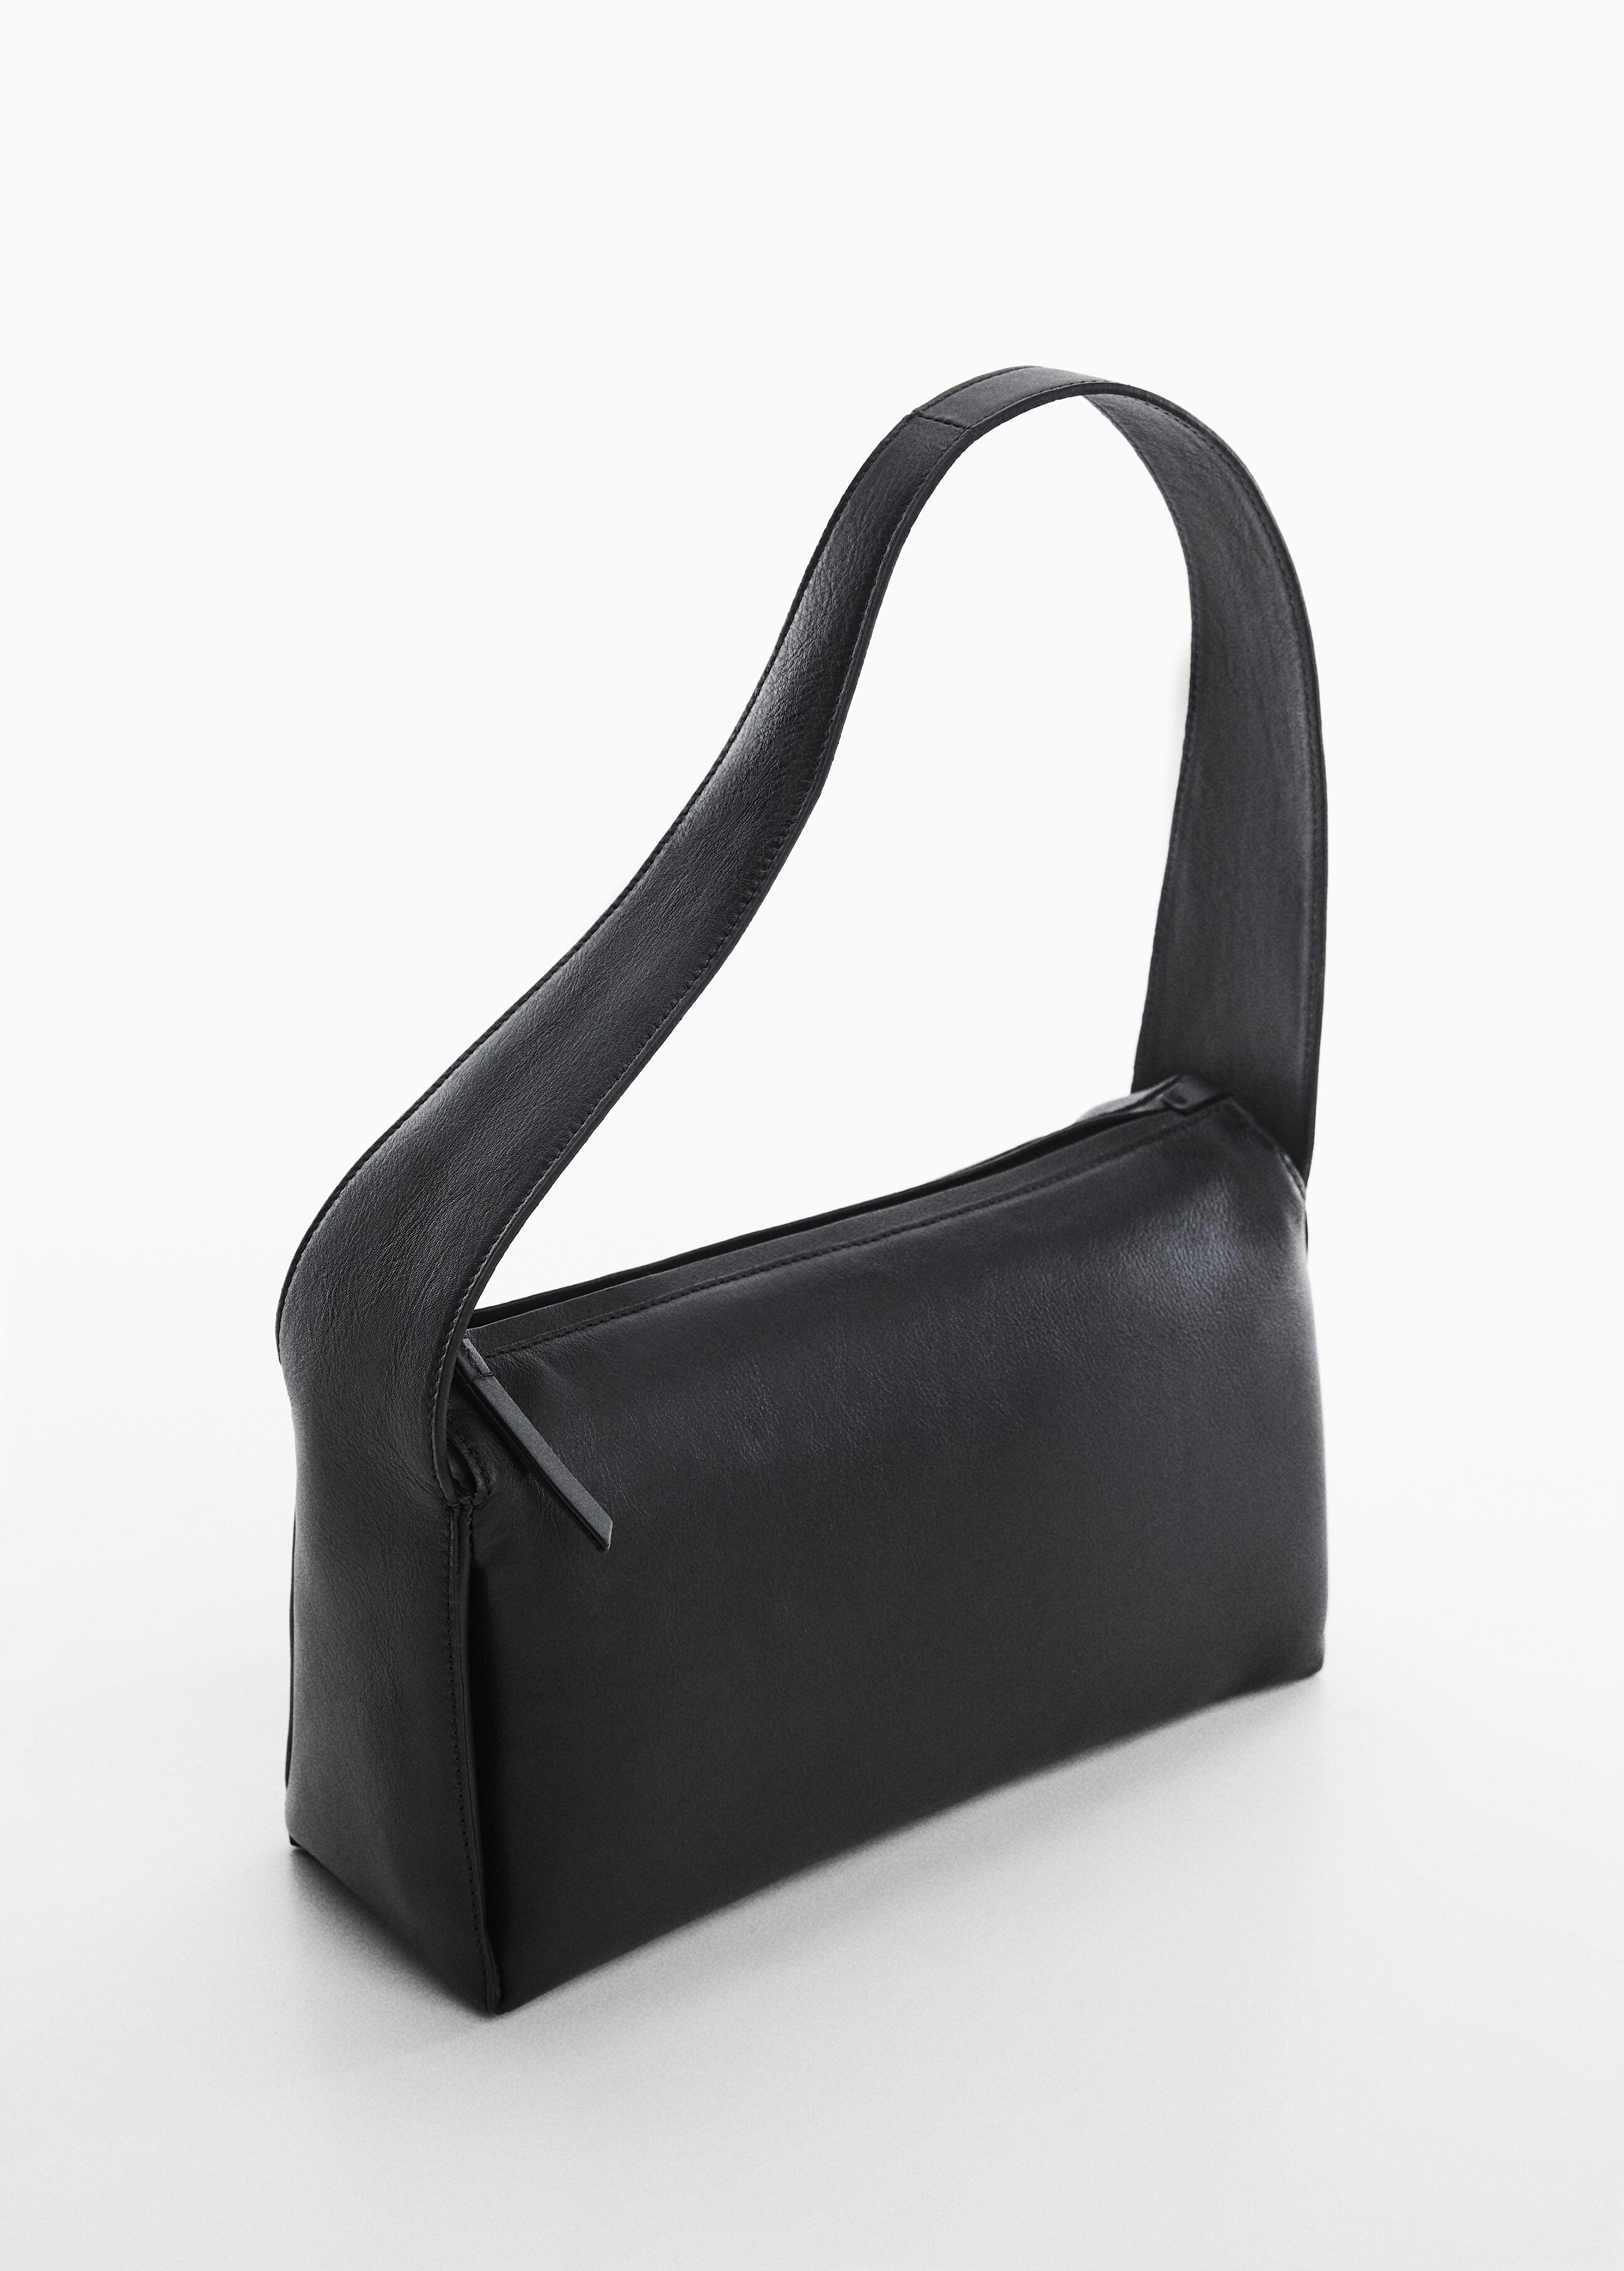 Leather shoulder bag - Medium plane